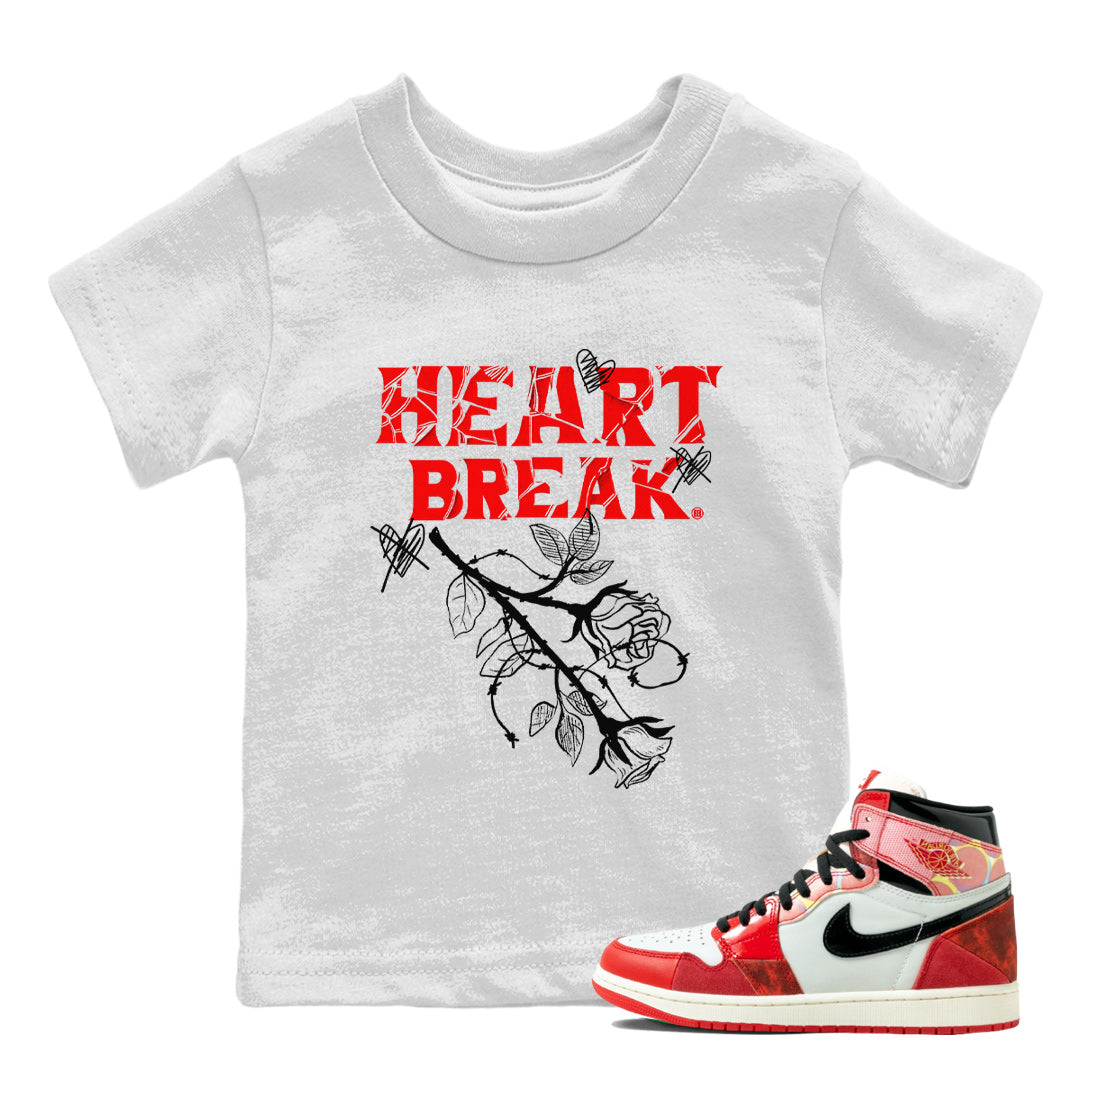 Air Jordan 1 Spider Man Sneaker Match Tees Heart Break Sneaker Release Tees Air Jordan 1 Spider Man T Shirt Kids Shirts White 1